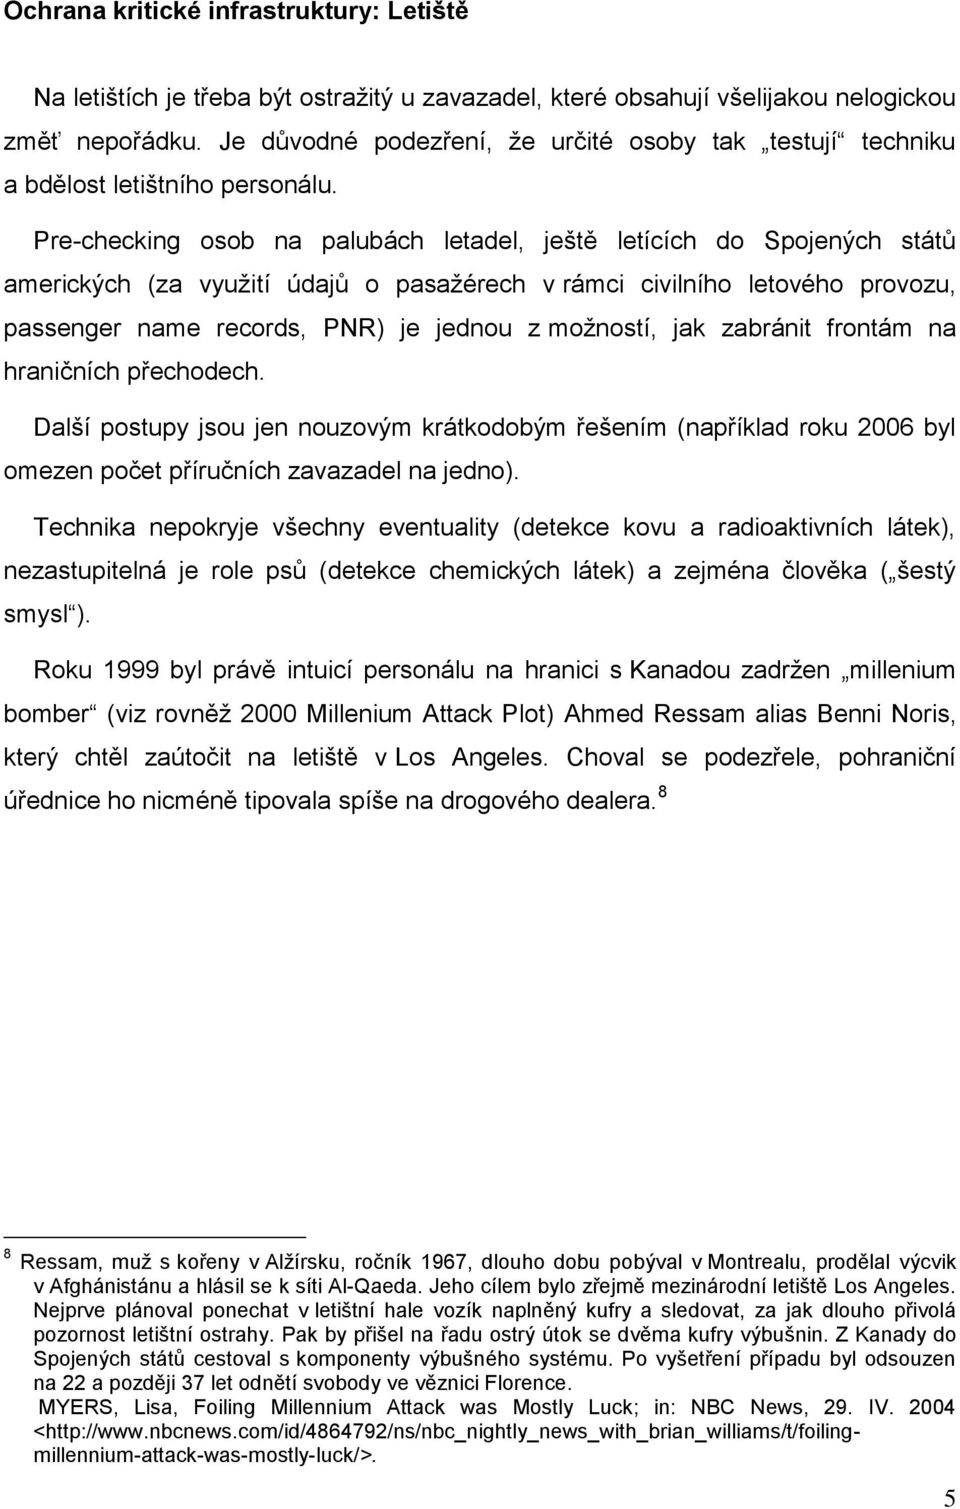 Pre-checking osob na palubách letadel, ještě letících do Spojených států amerických (za využití údajů o pasažérech v rámci civilního letového provozu, passenger name records, PNR) je jednou z